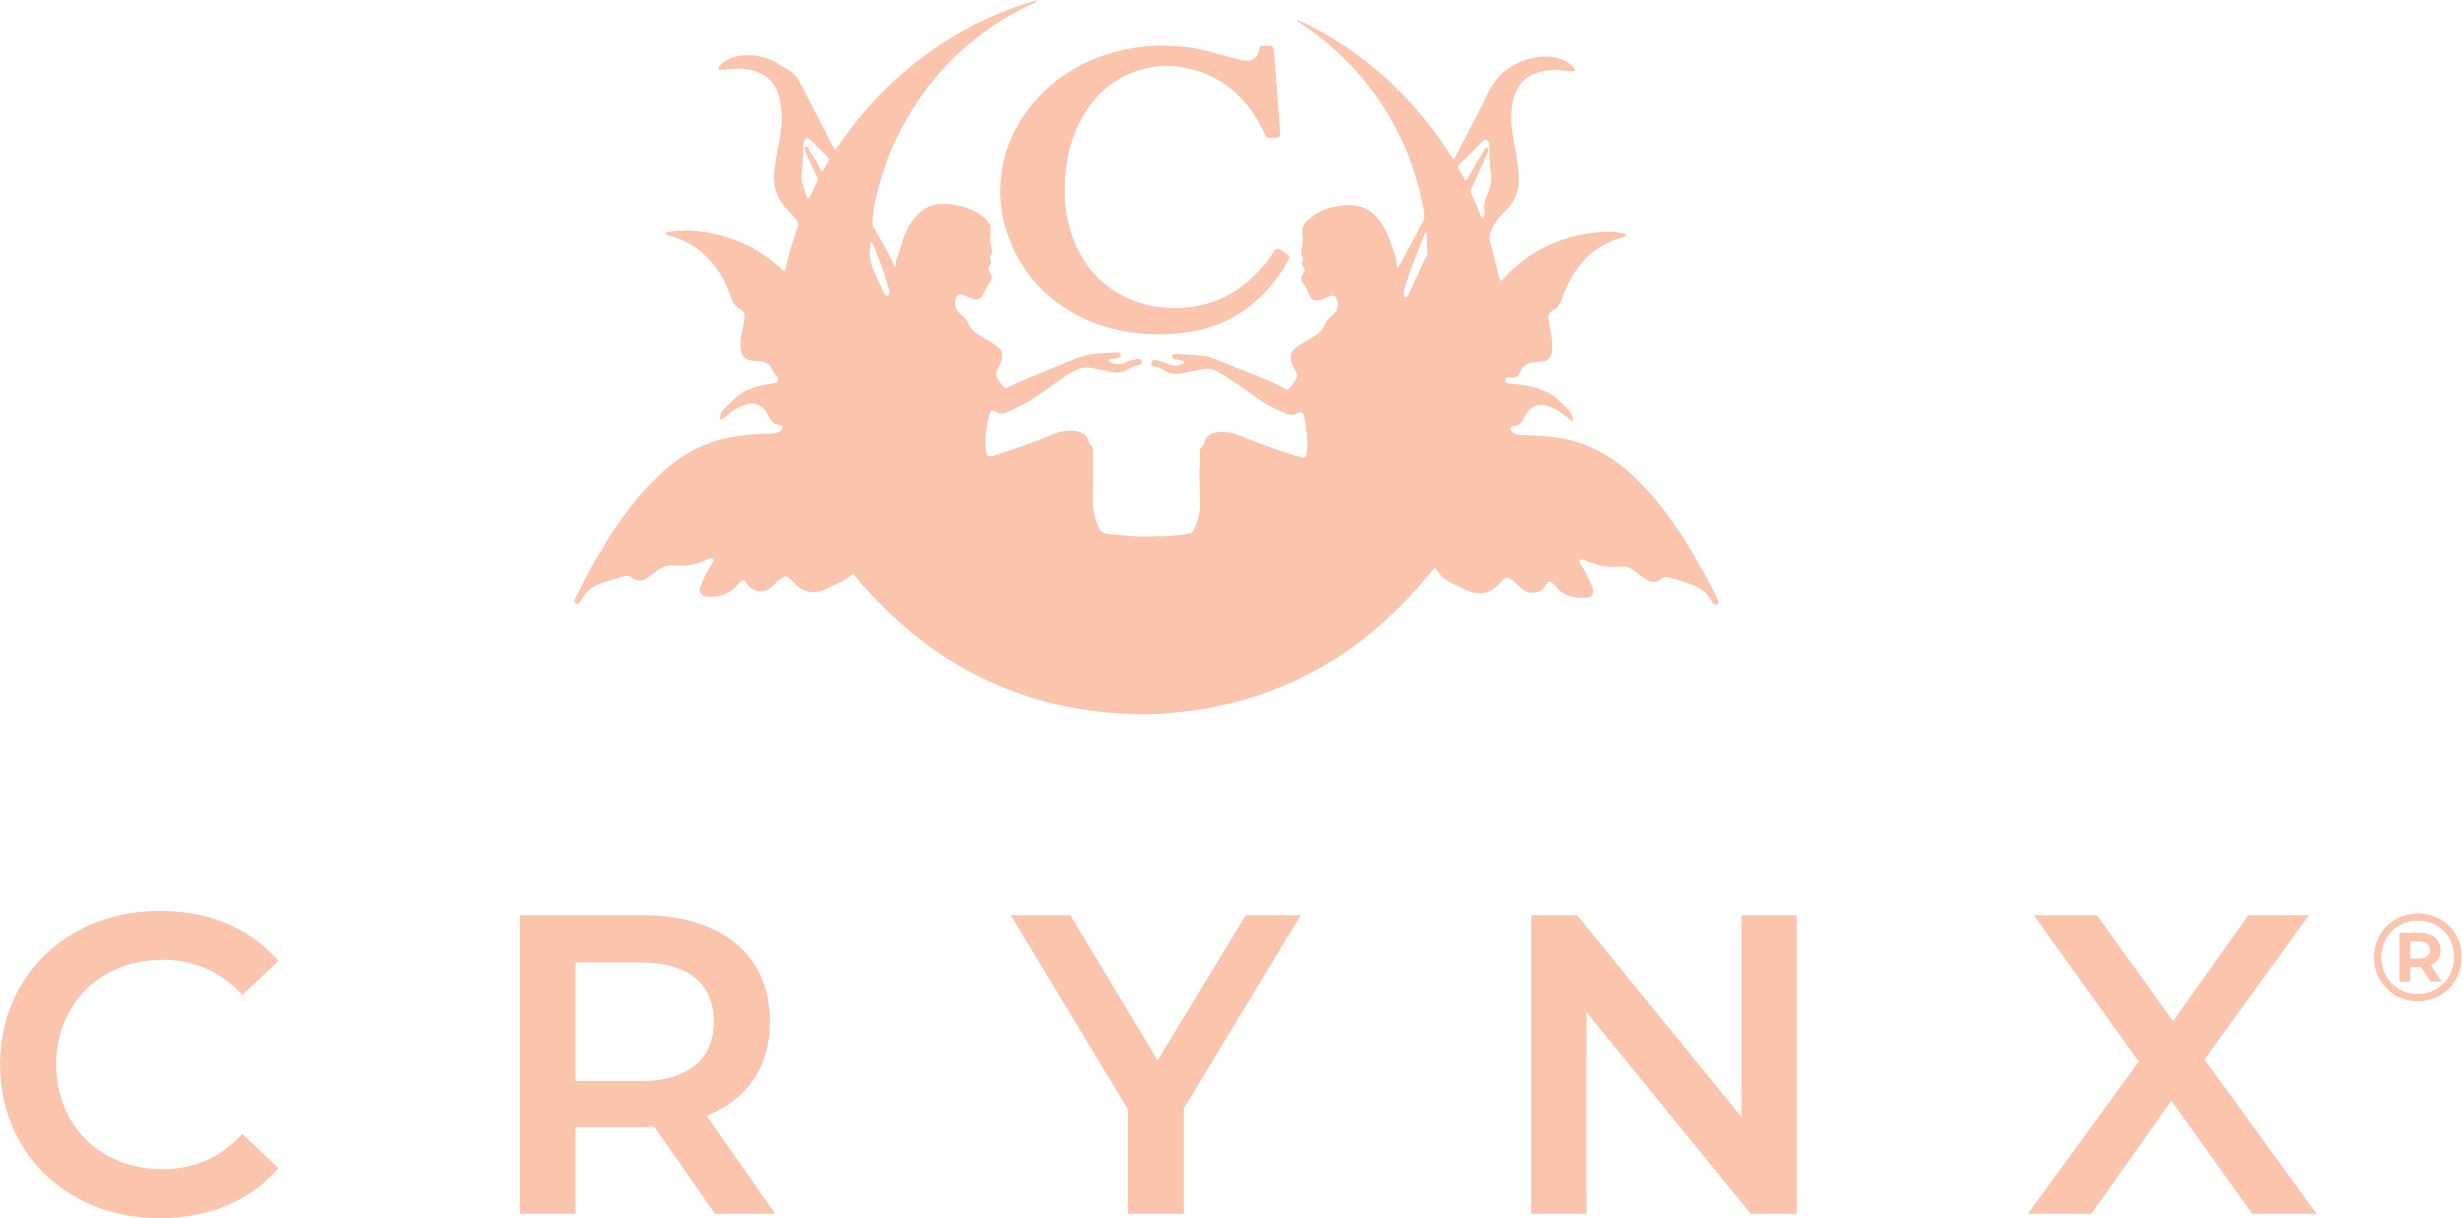 Crynx